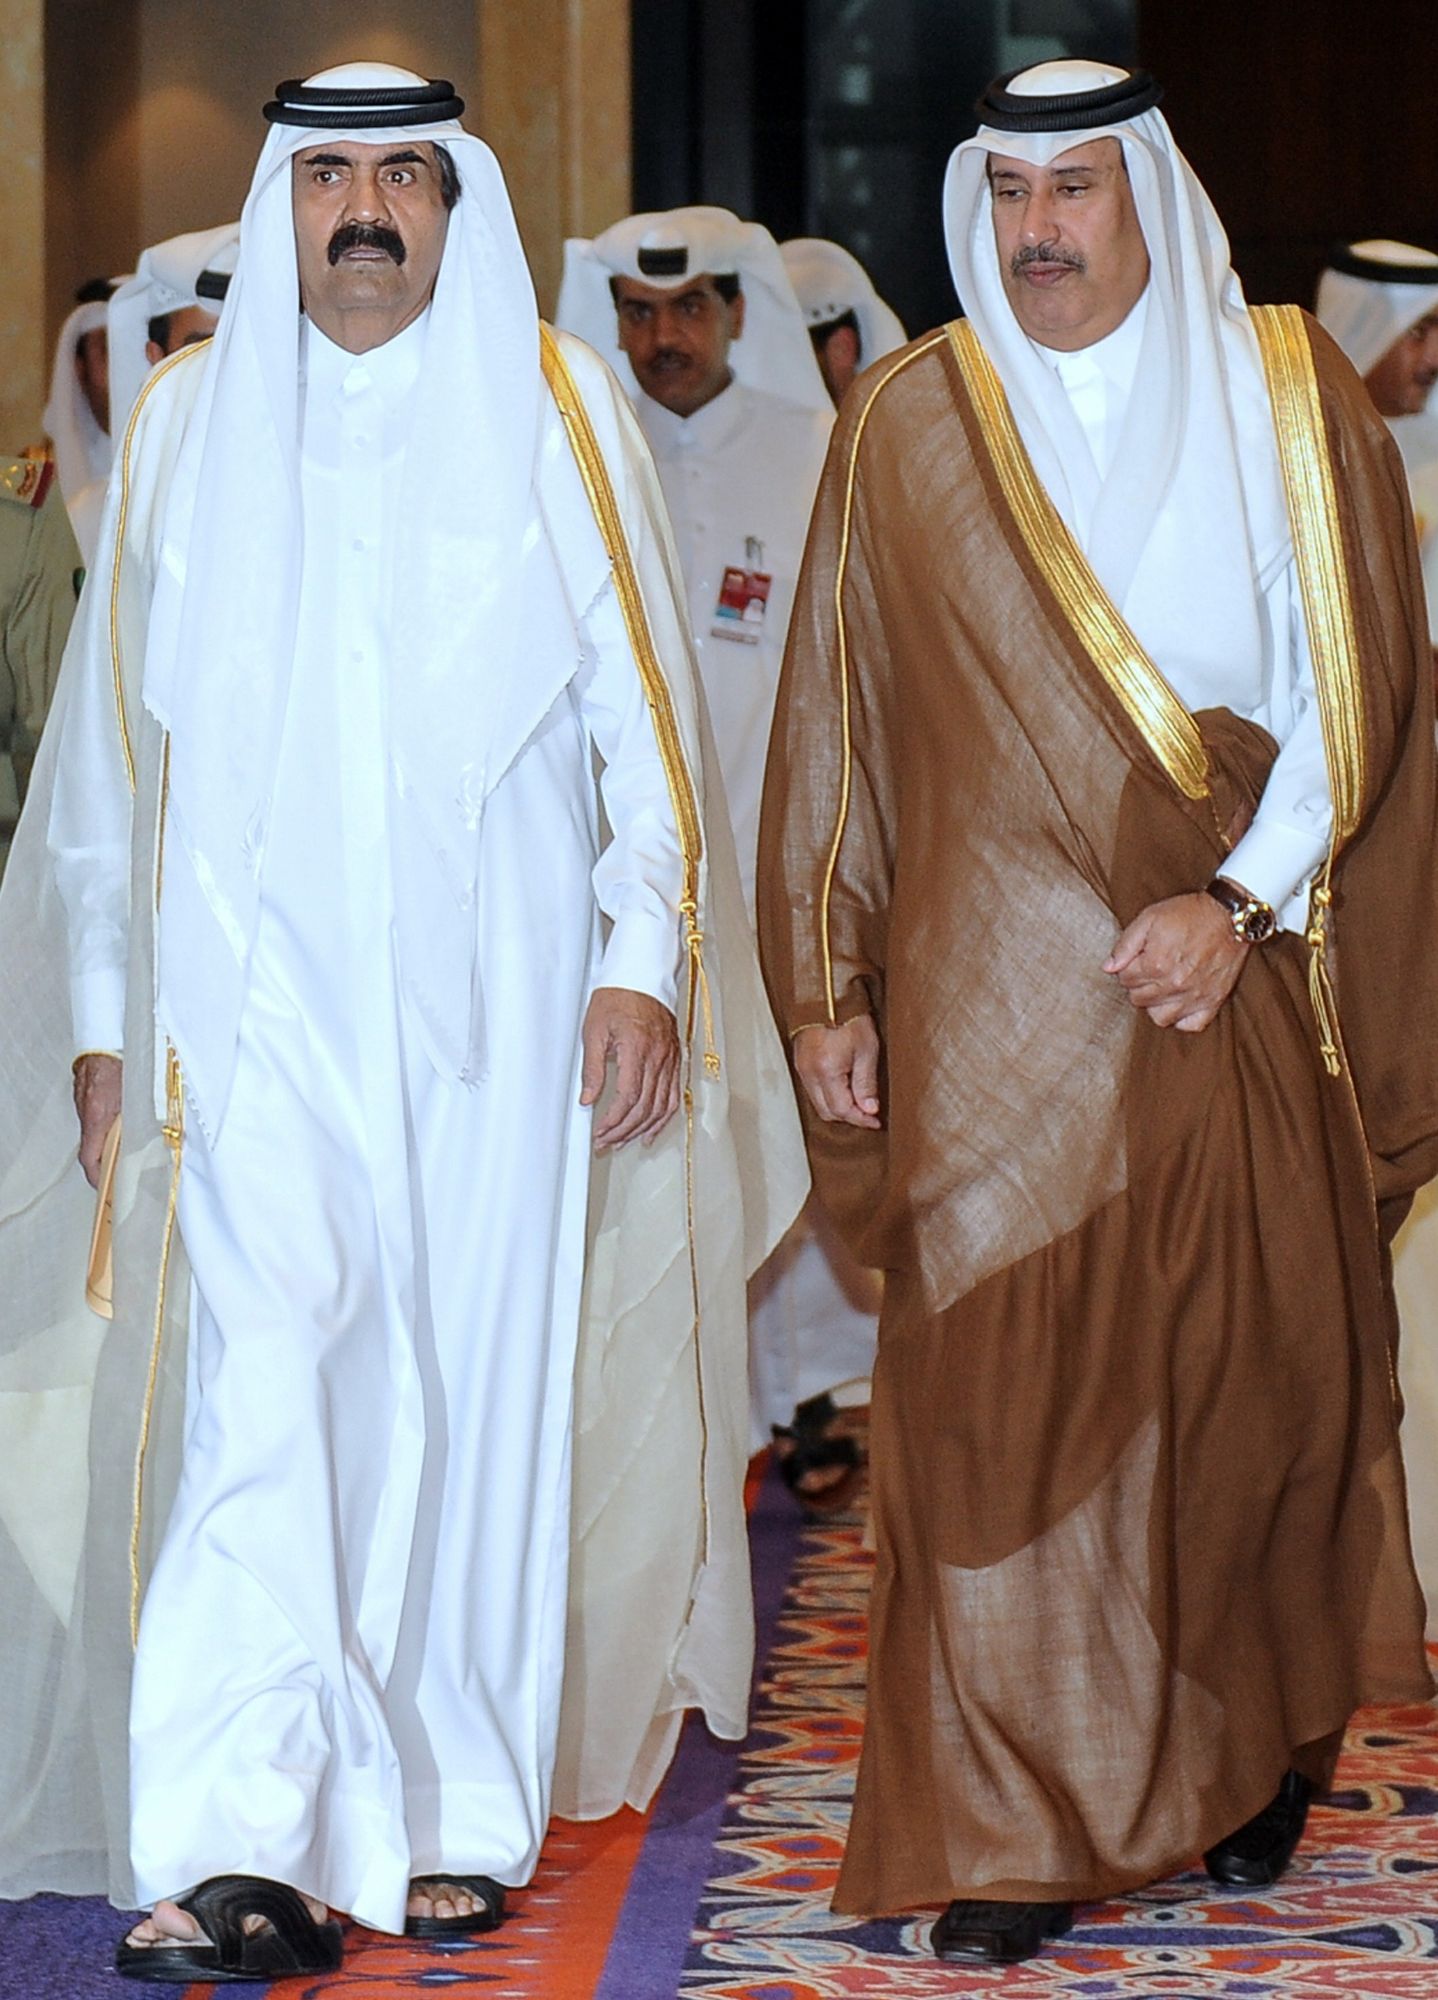 حمد بن جاسم كان قوة مؤثرة في دائرة صناعة القرار في قطر